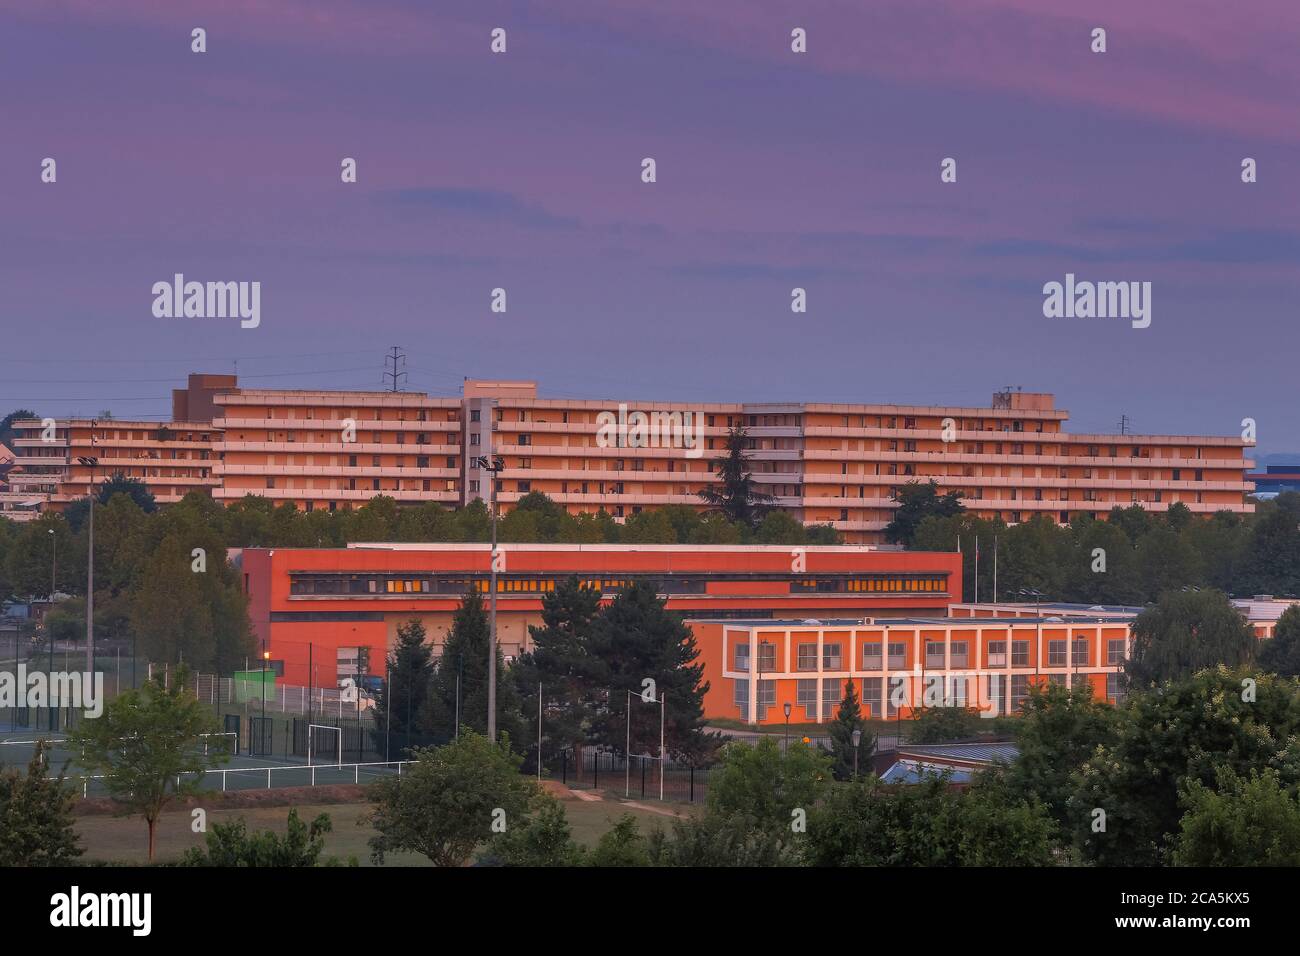 Francia, Yvelines, Les Mureaux, vista su famosi edifici di appartamenti all'alba Foto Stock